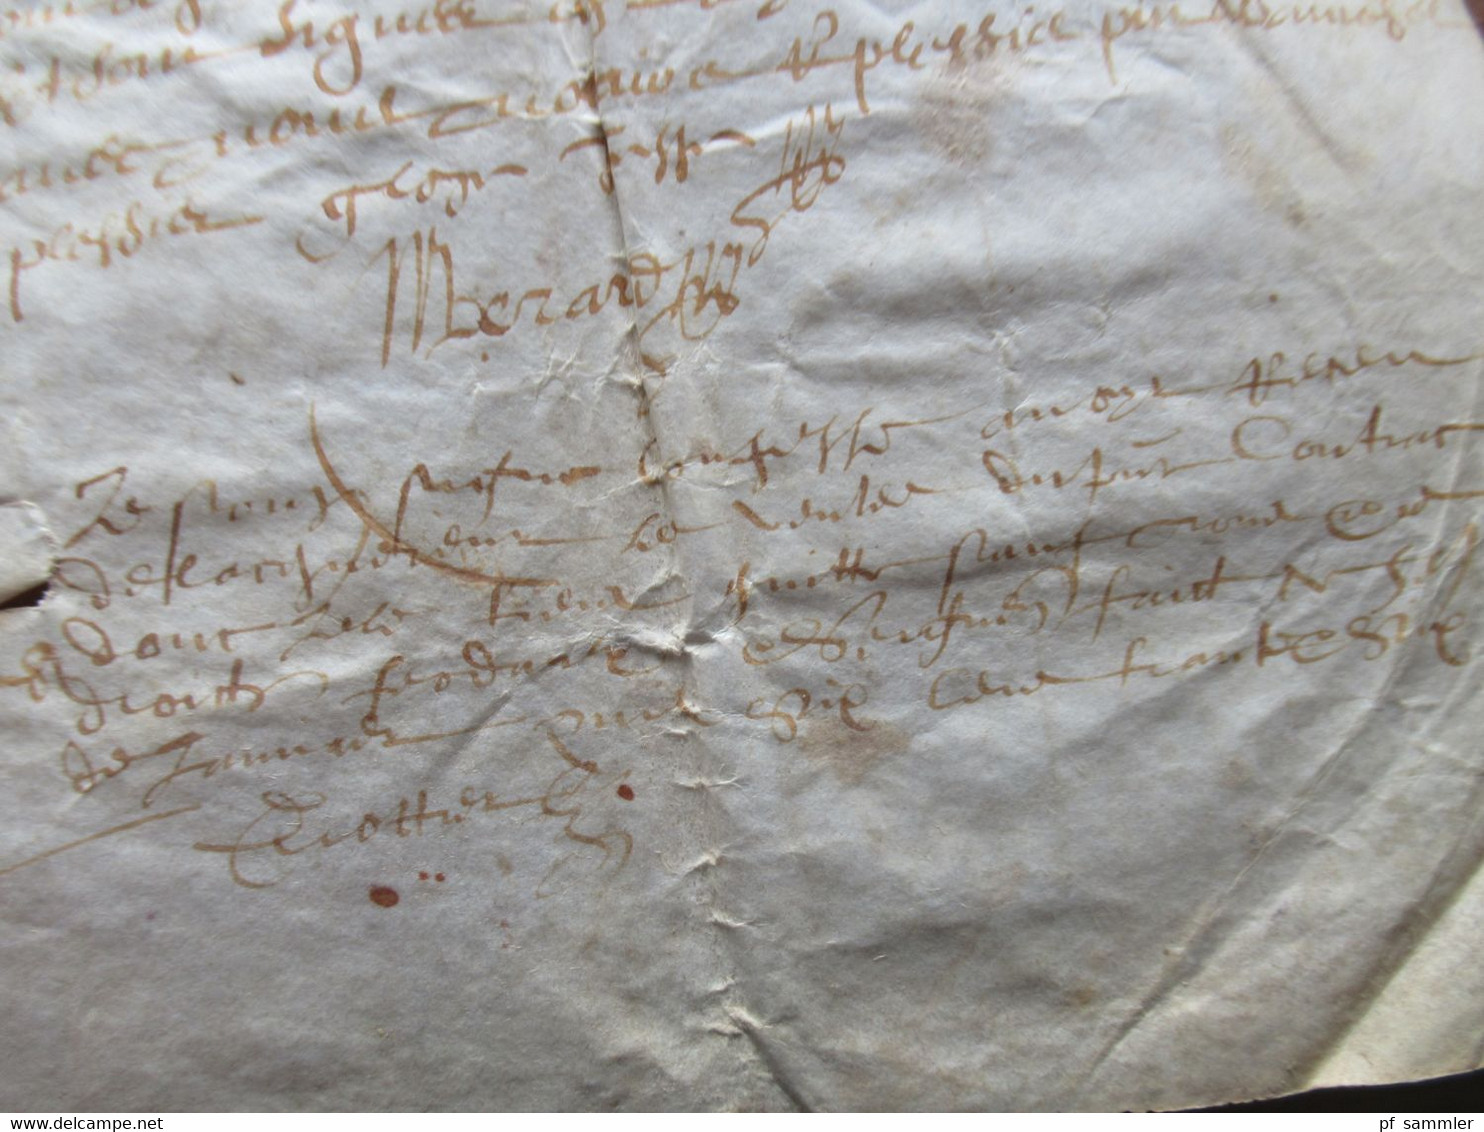 Frankreich Brief / Dokument 1635 / 17. Jahrhundert mit Autograph / Schnörkelunterschrift!